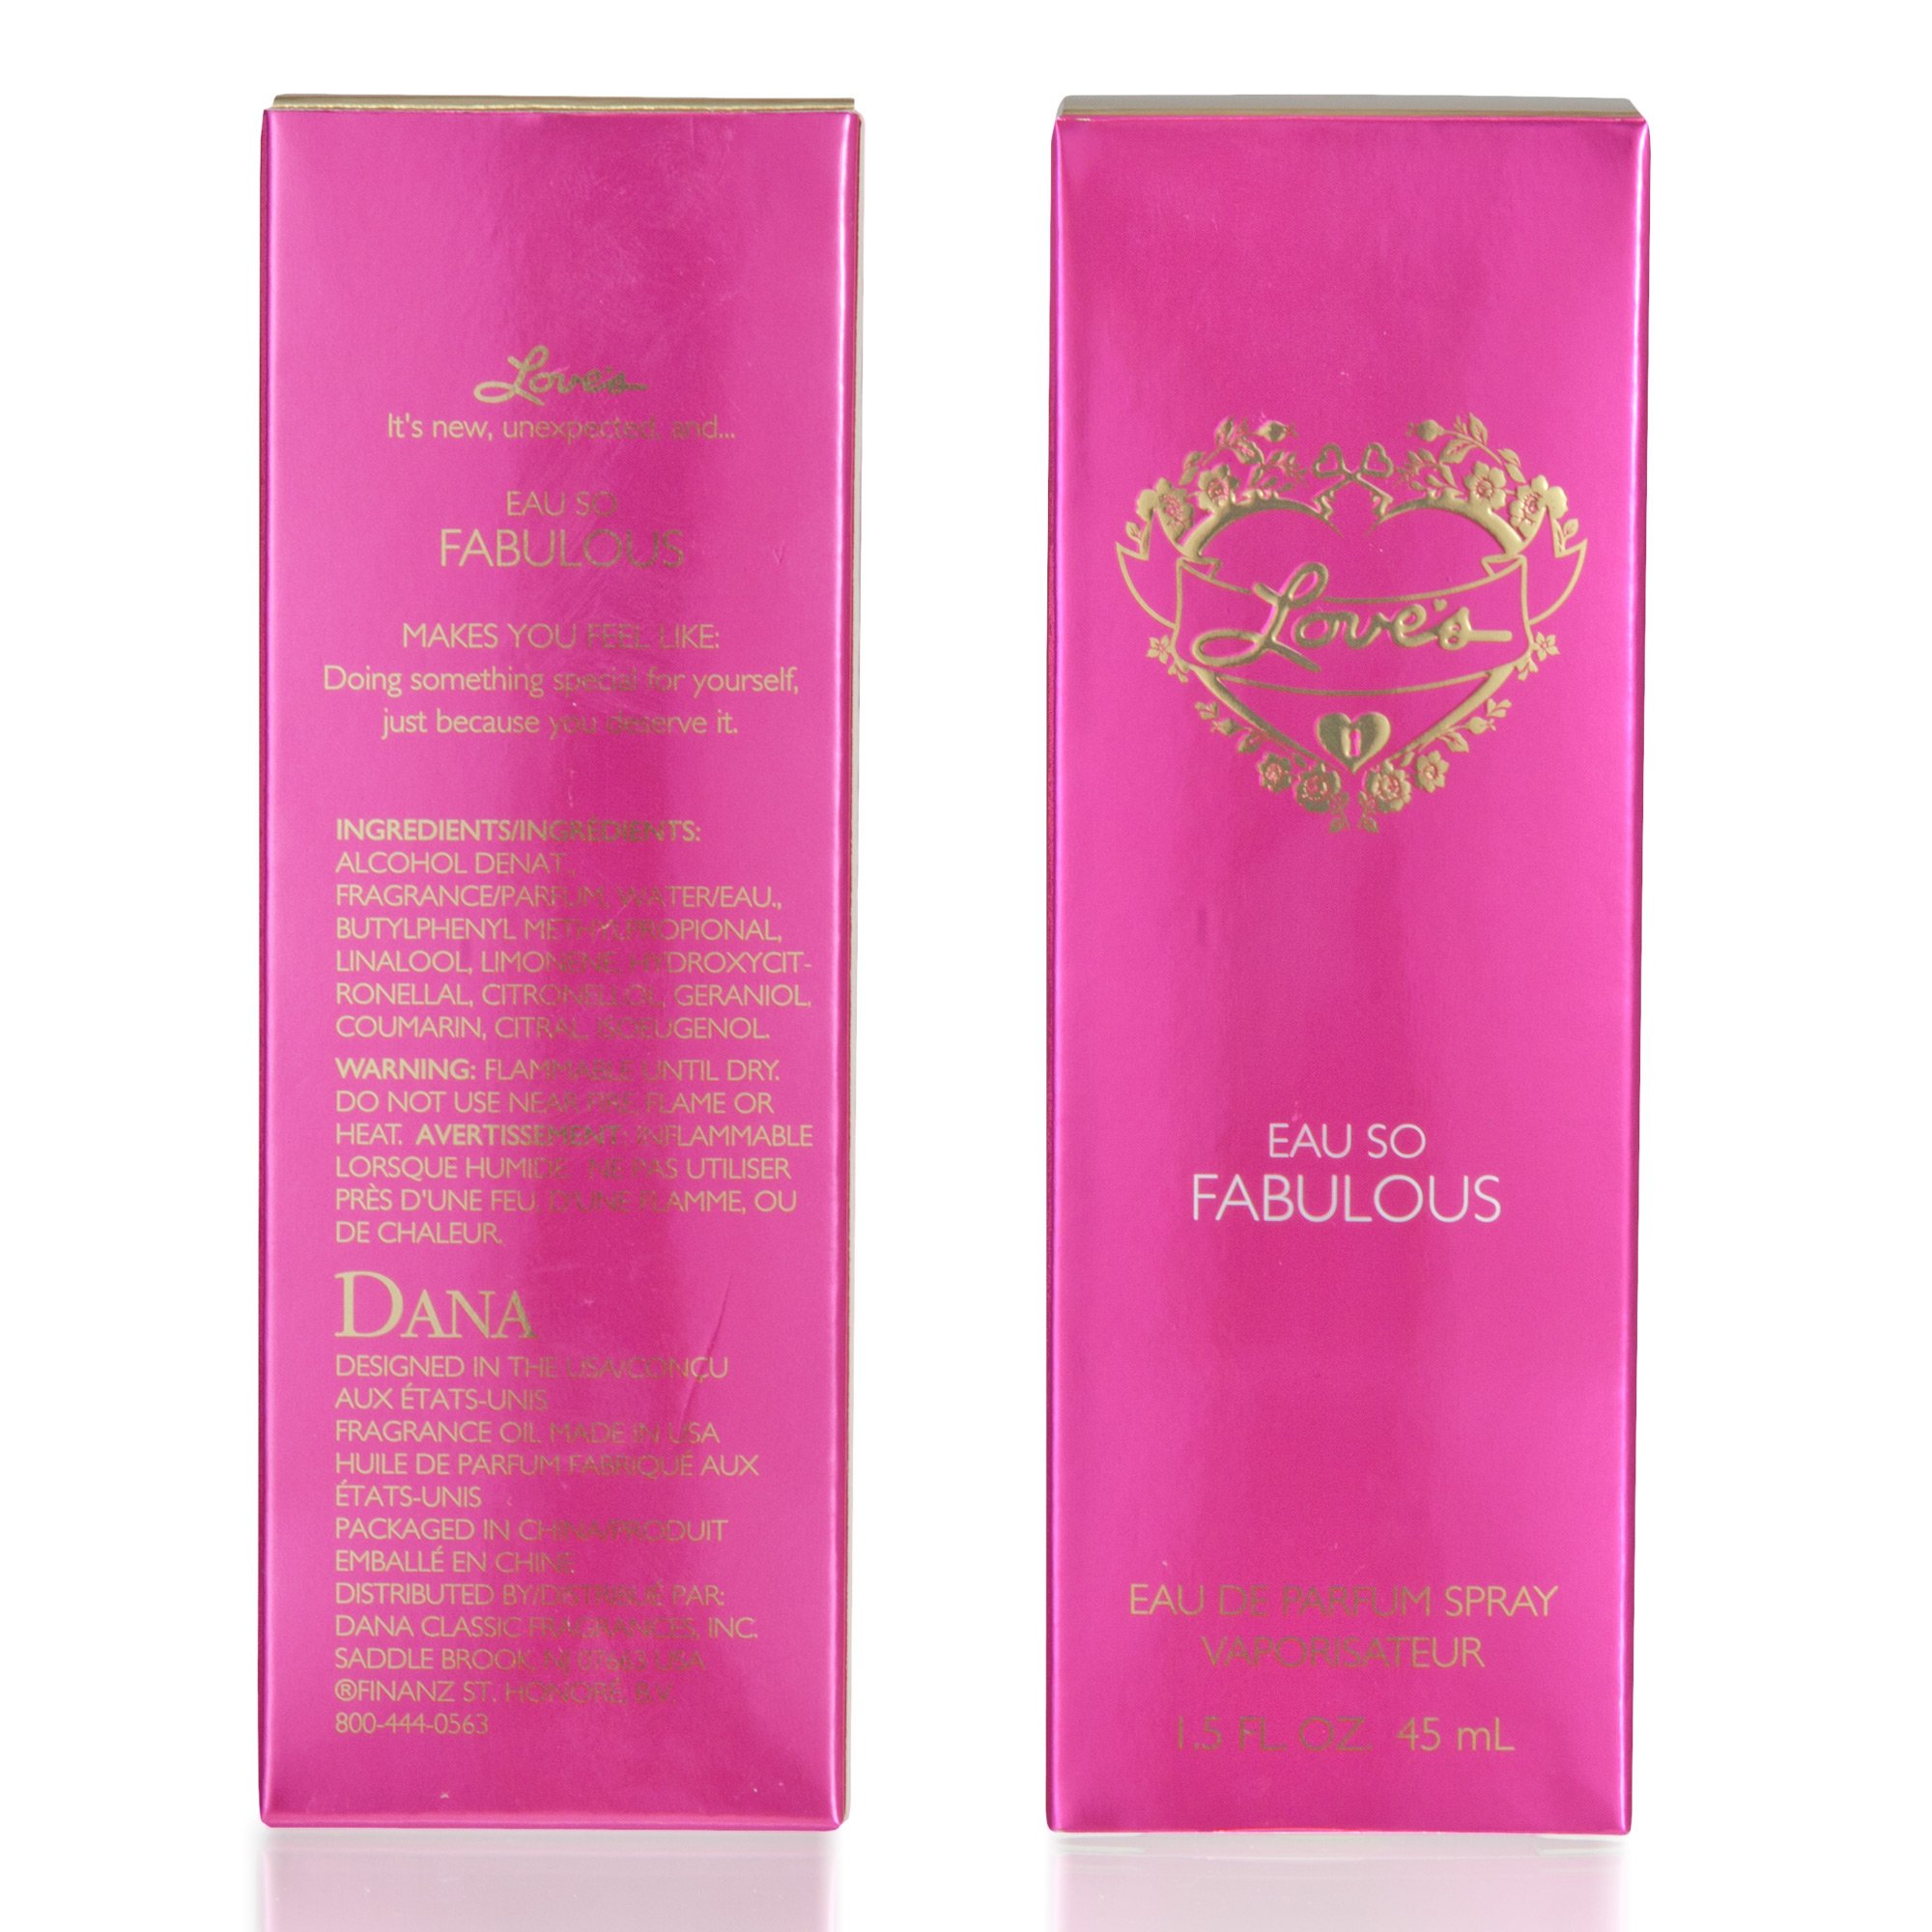 LOVE'S EAU SO FABULOUS 1.5 fl. oz. EAU DE PARFUM By DANA CLASSIC FRAGRANCES